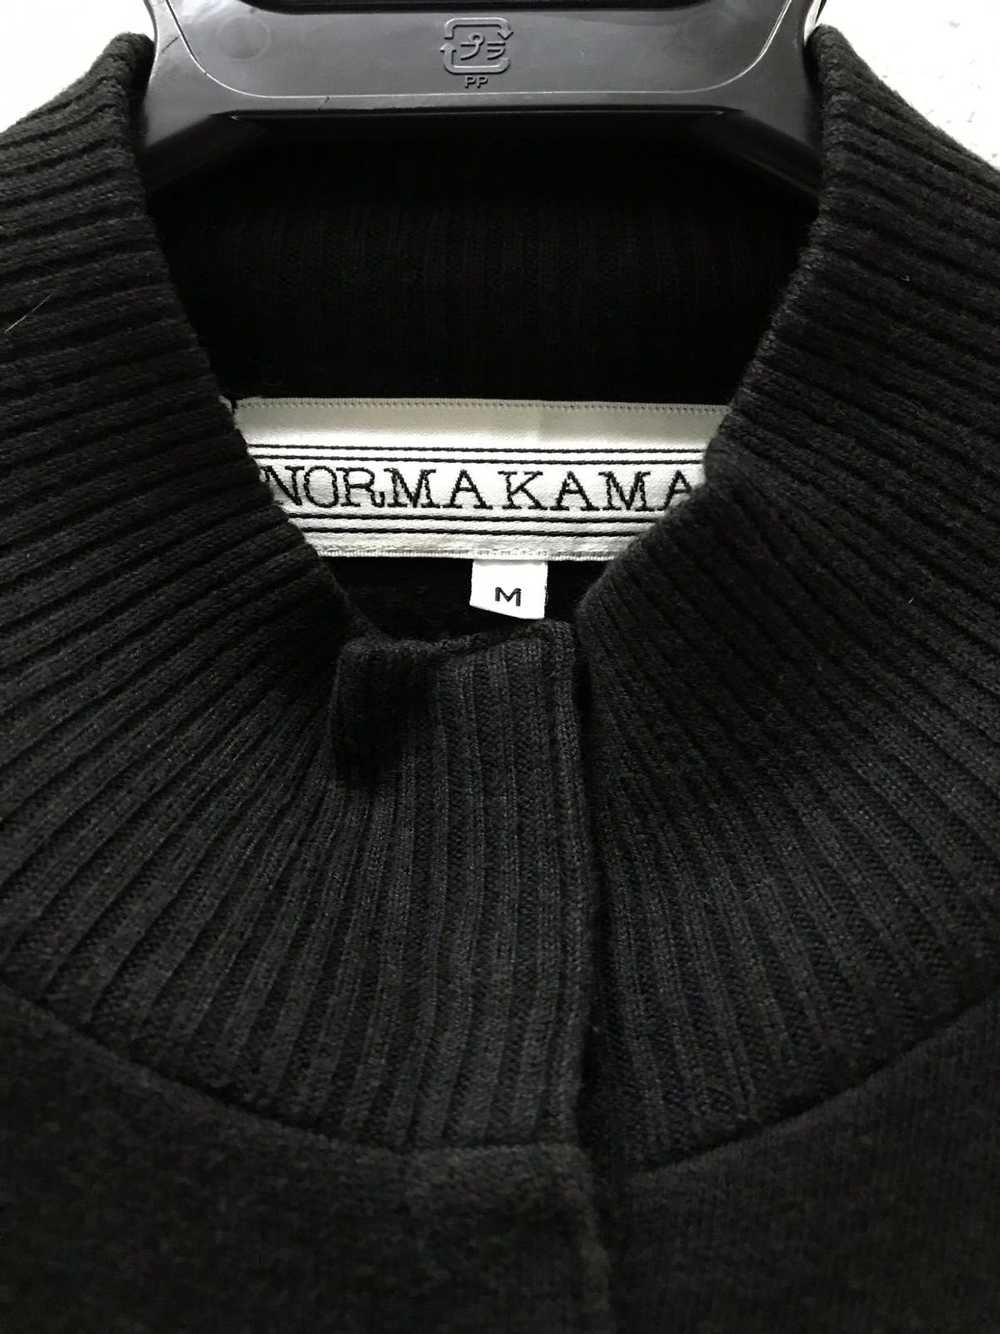 Norma Kamali Knitwear Cropped Sweater - image 2